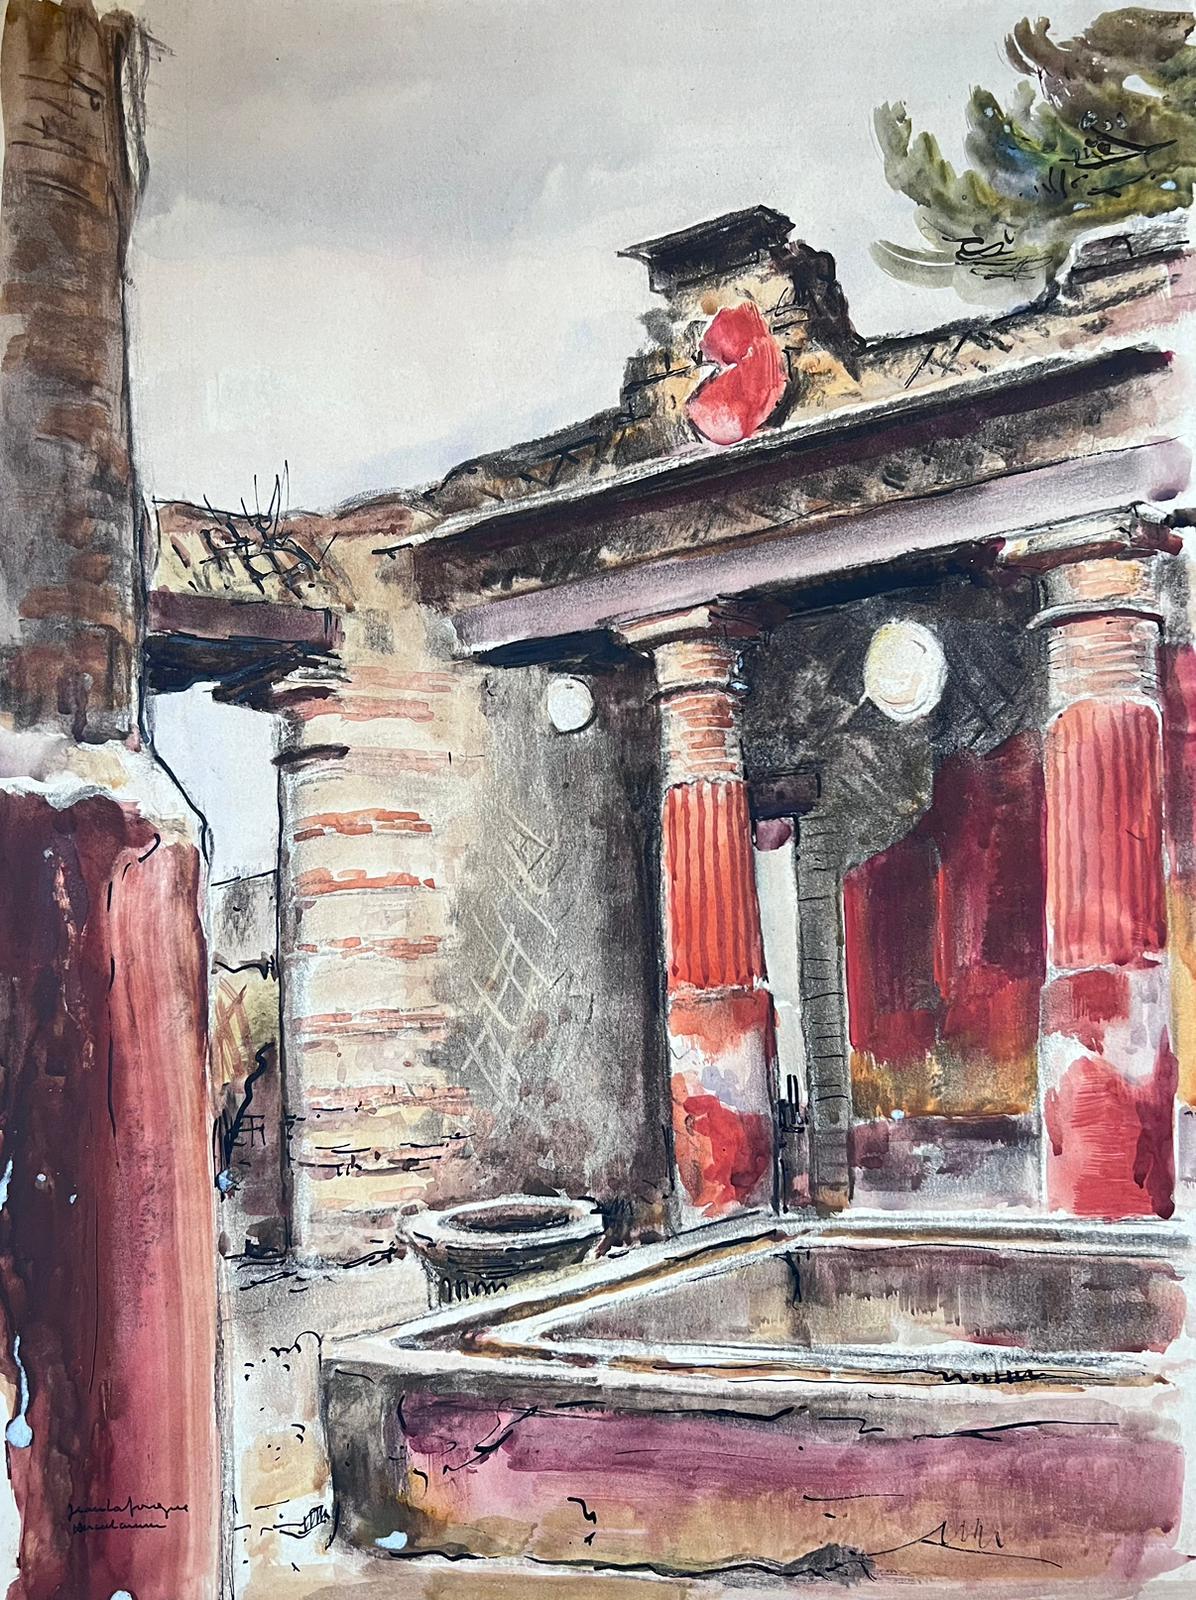 Alte römische Badezimmer und Gebäude Rote Villa, signiertes Gemälde des französischen Impressionismus